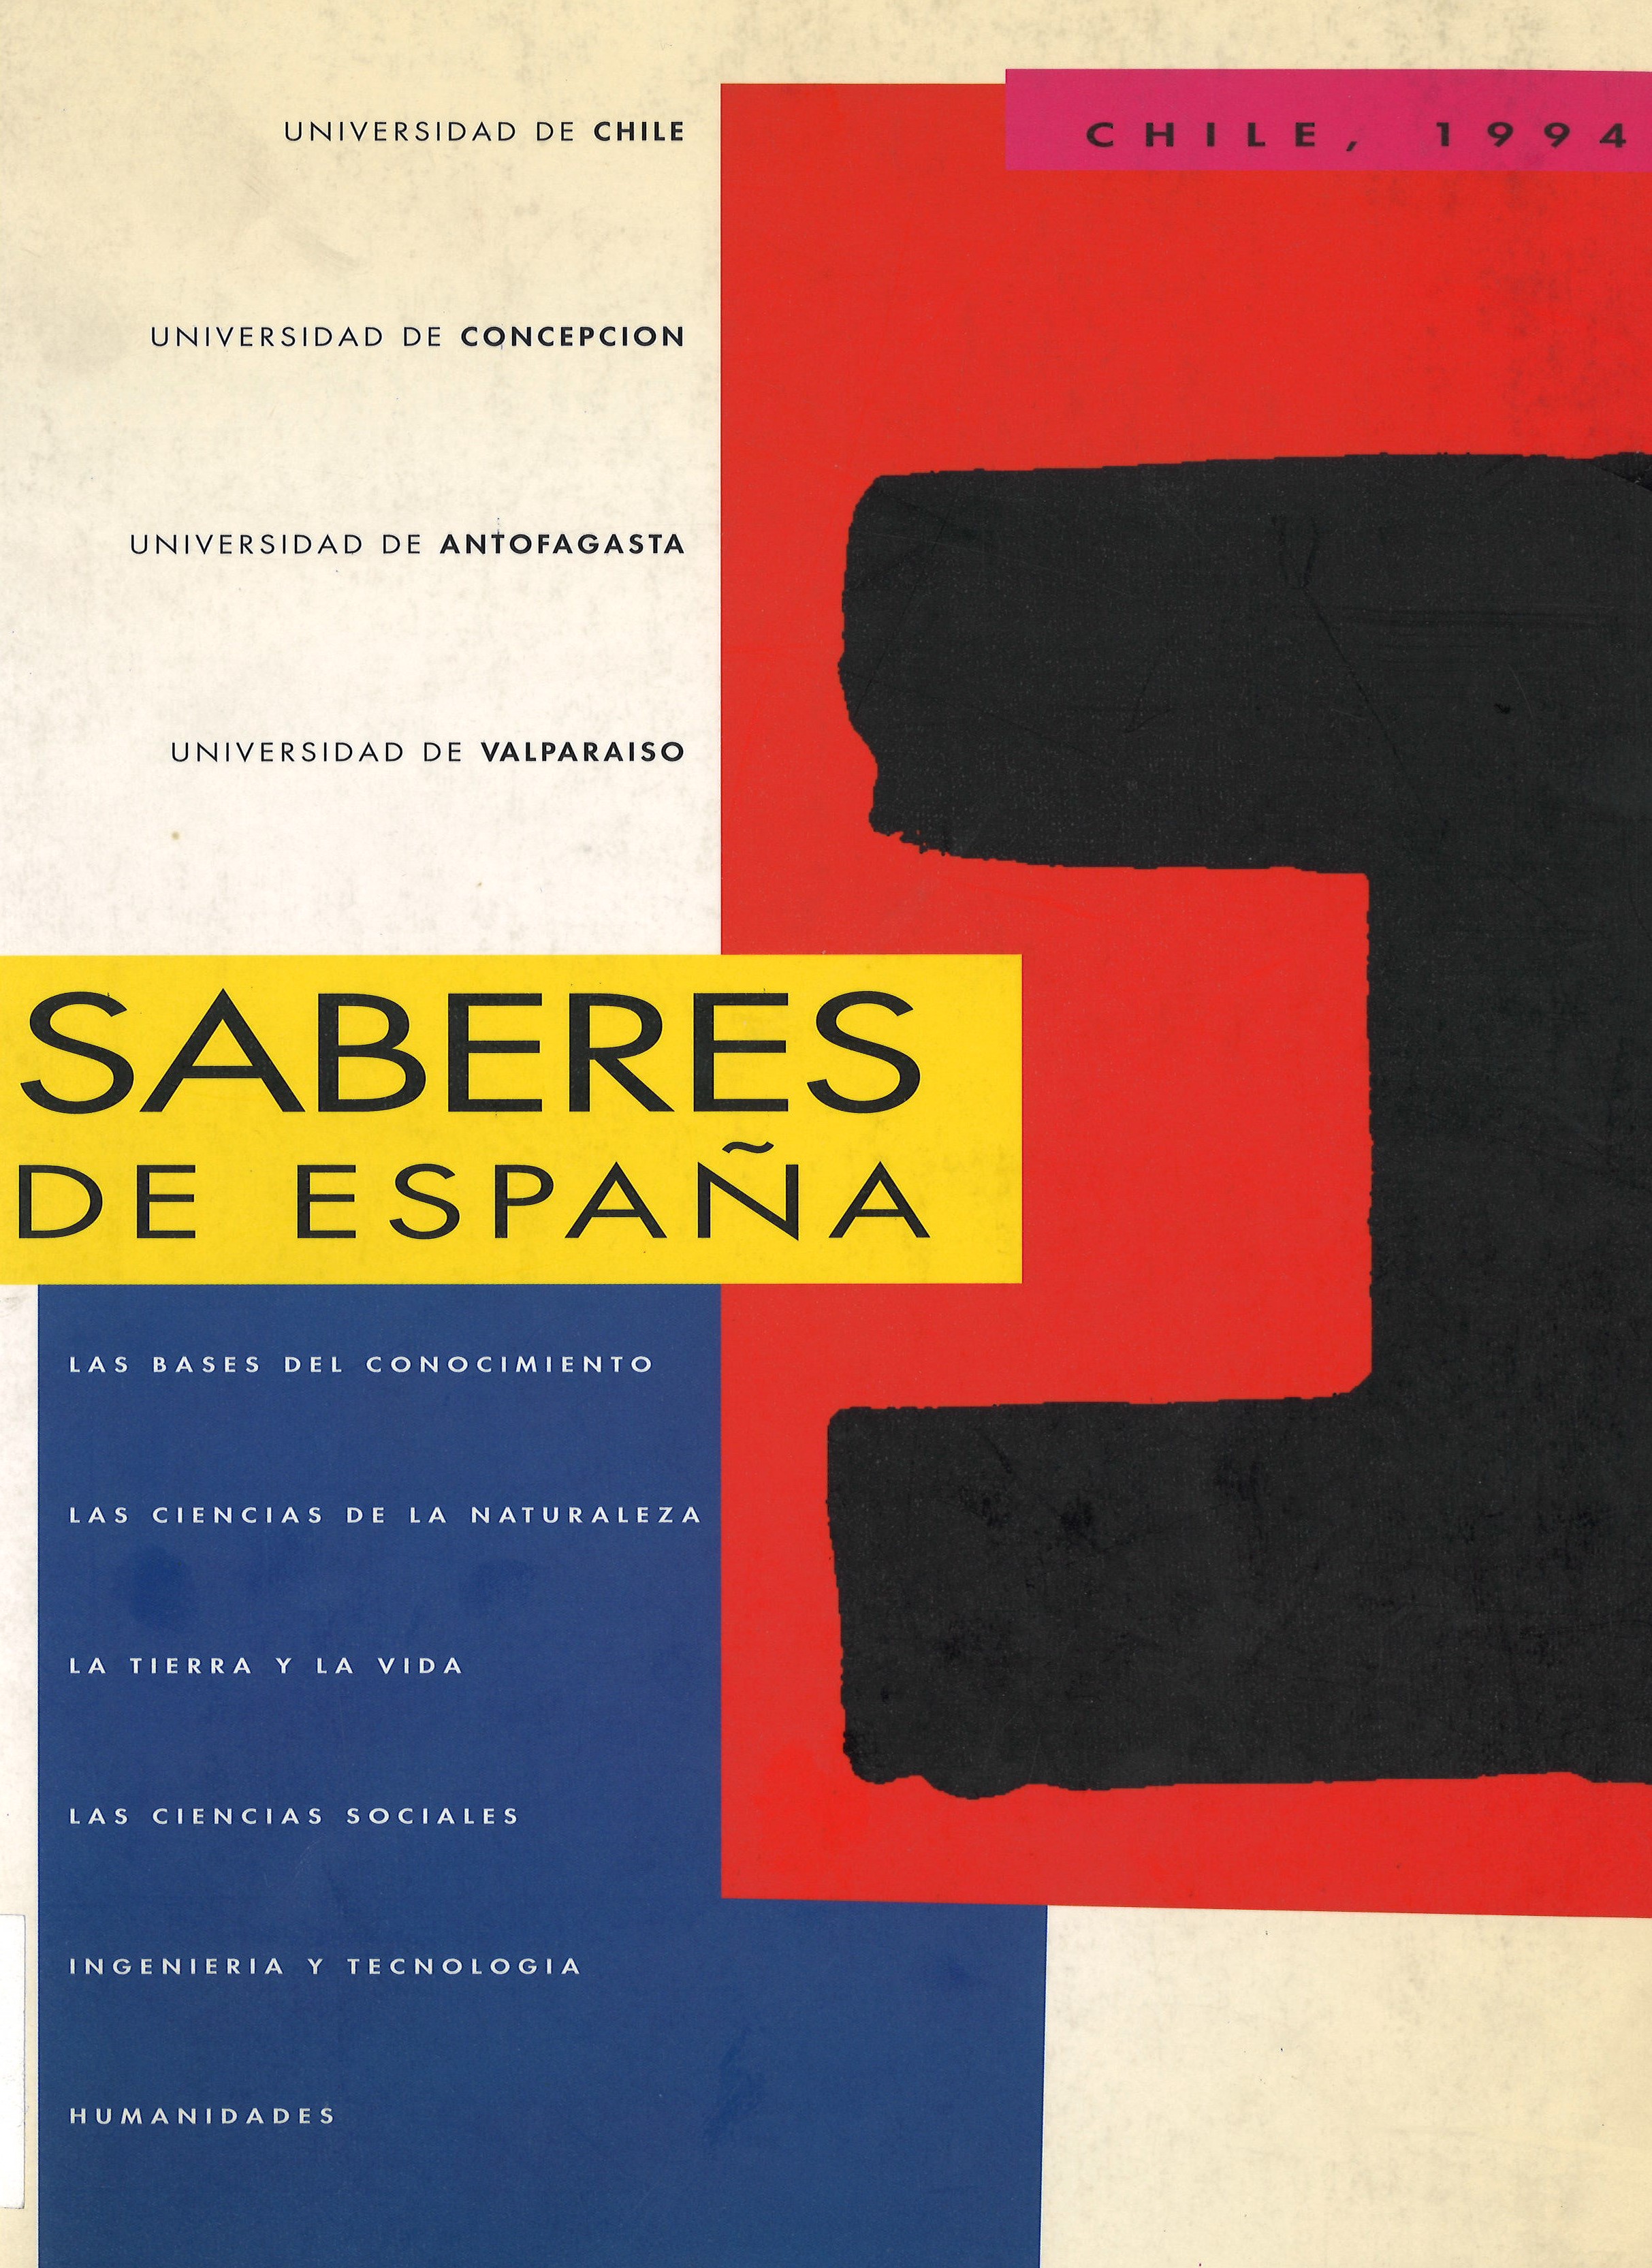 Imagen de portada del libro Saberes de España